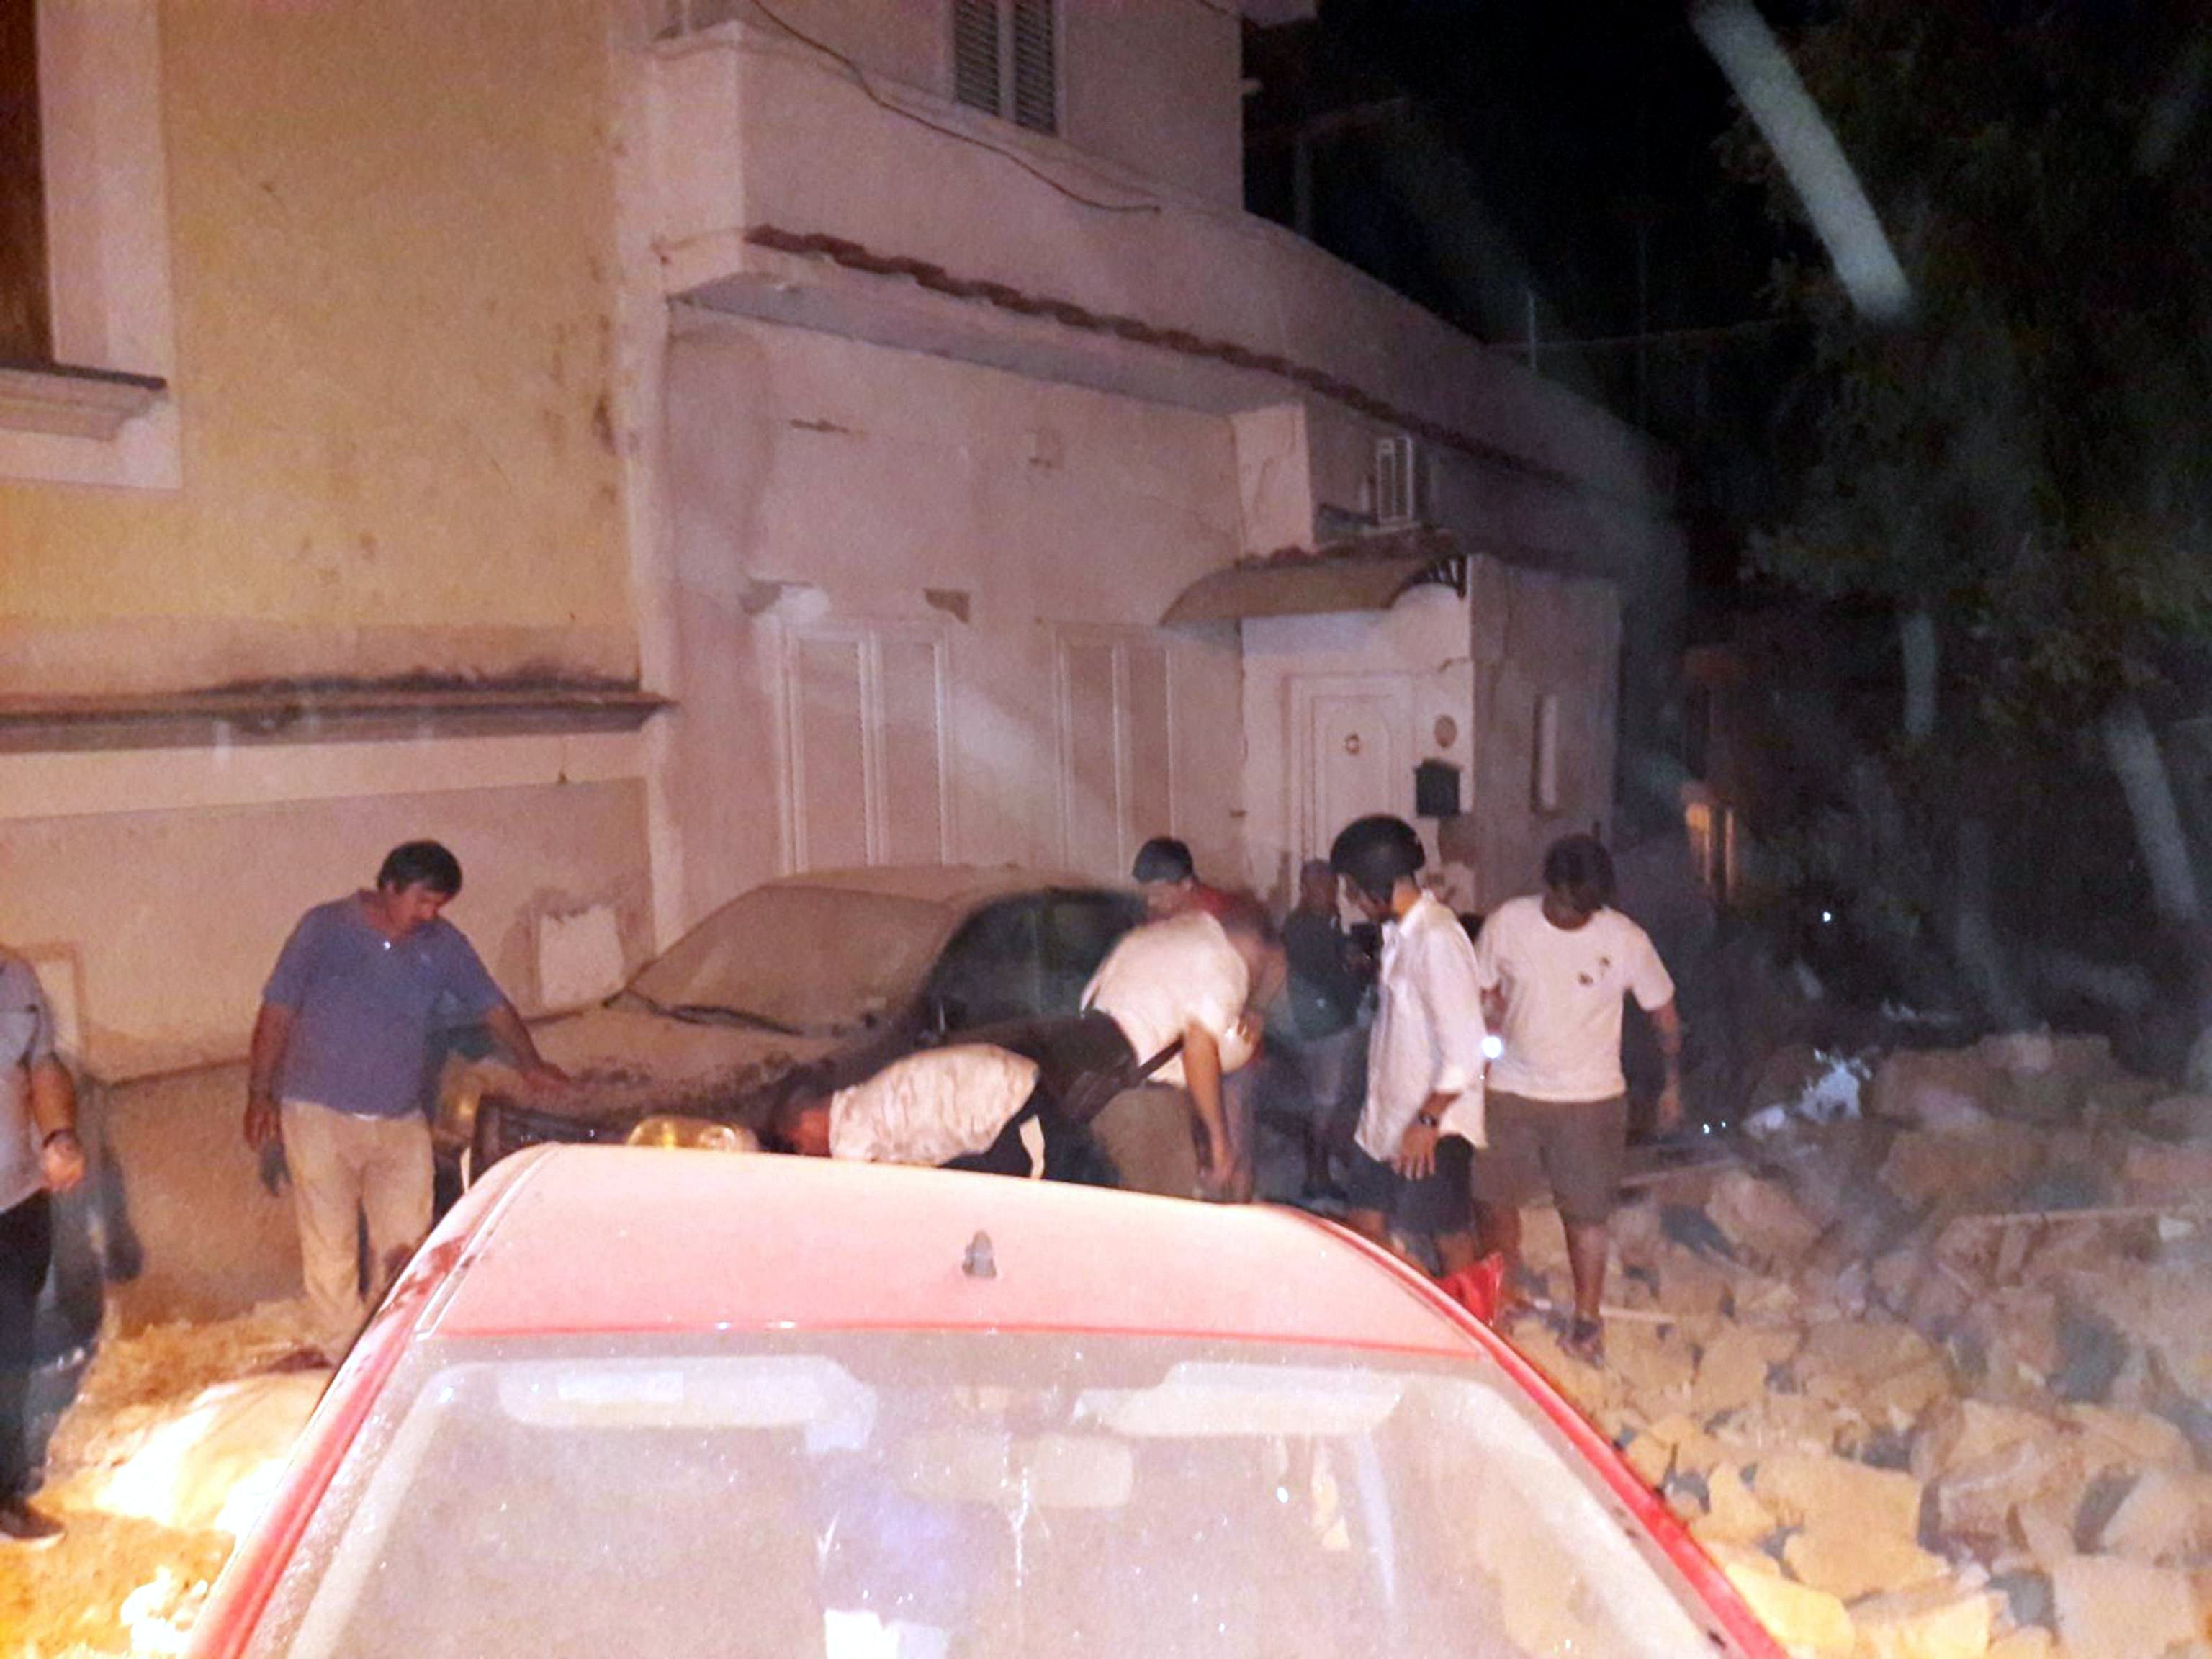 Земетресение на италианския остров Иския отне живота на поне двама души. Властите съобщават за 25 пострадали и разрушени сгради след труса с магнитуд 4,6 по Рихтер, разтърсил острова в понеделник вечерта.